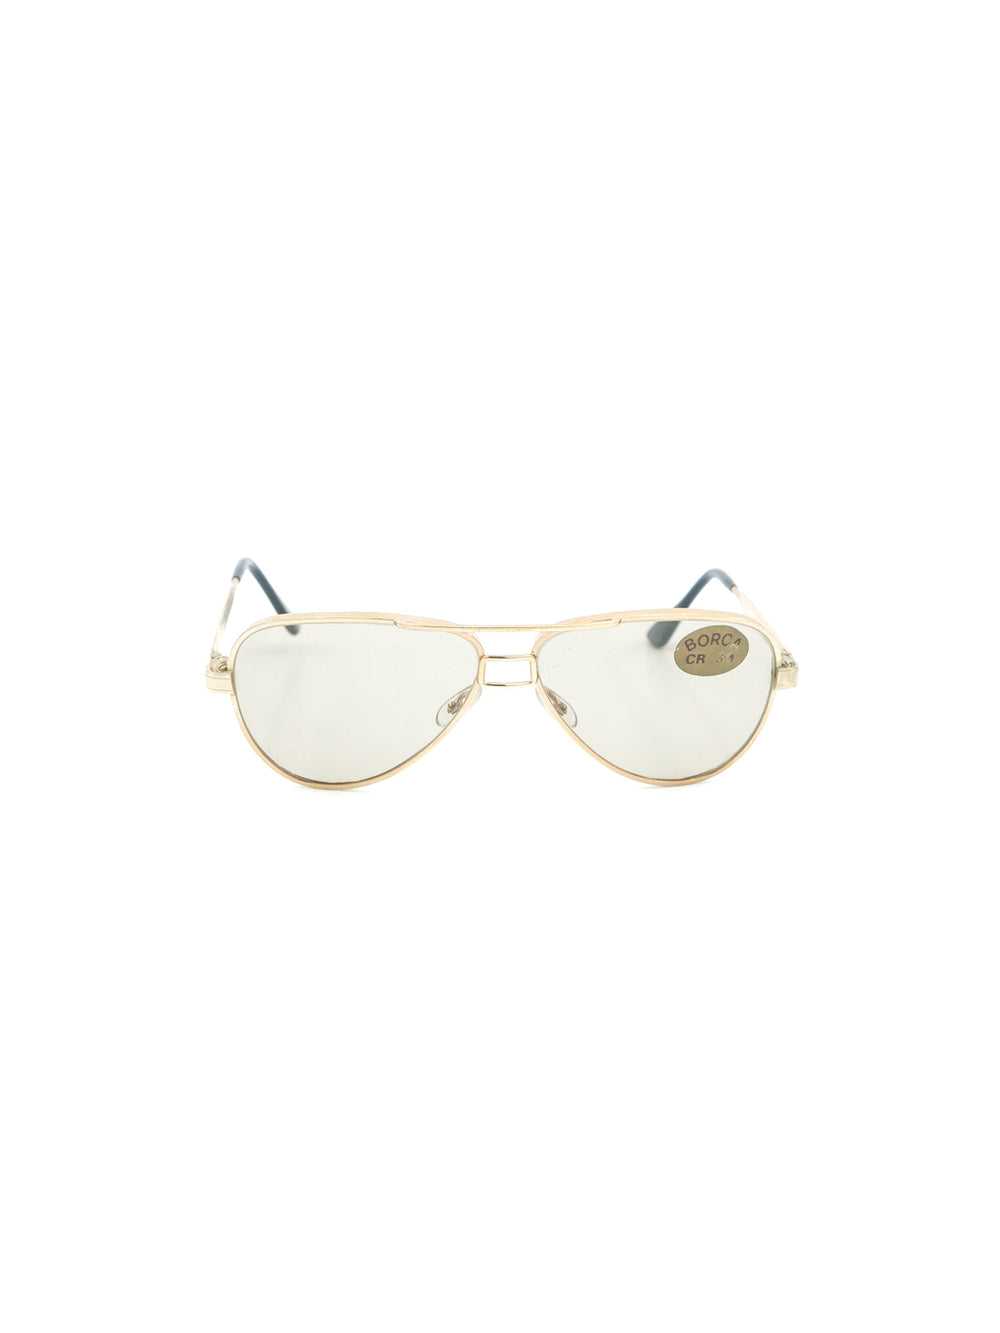 Gold Framed Aviator Sunglasses - image 1